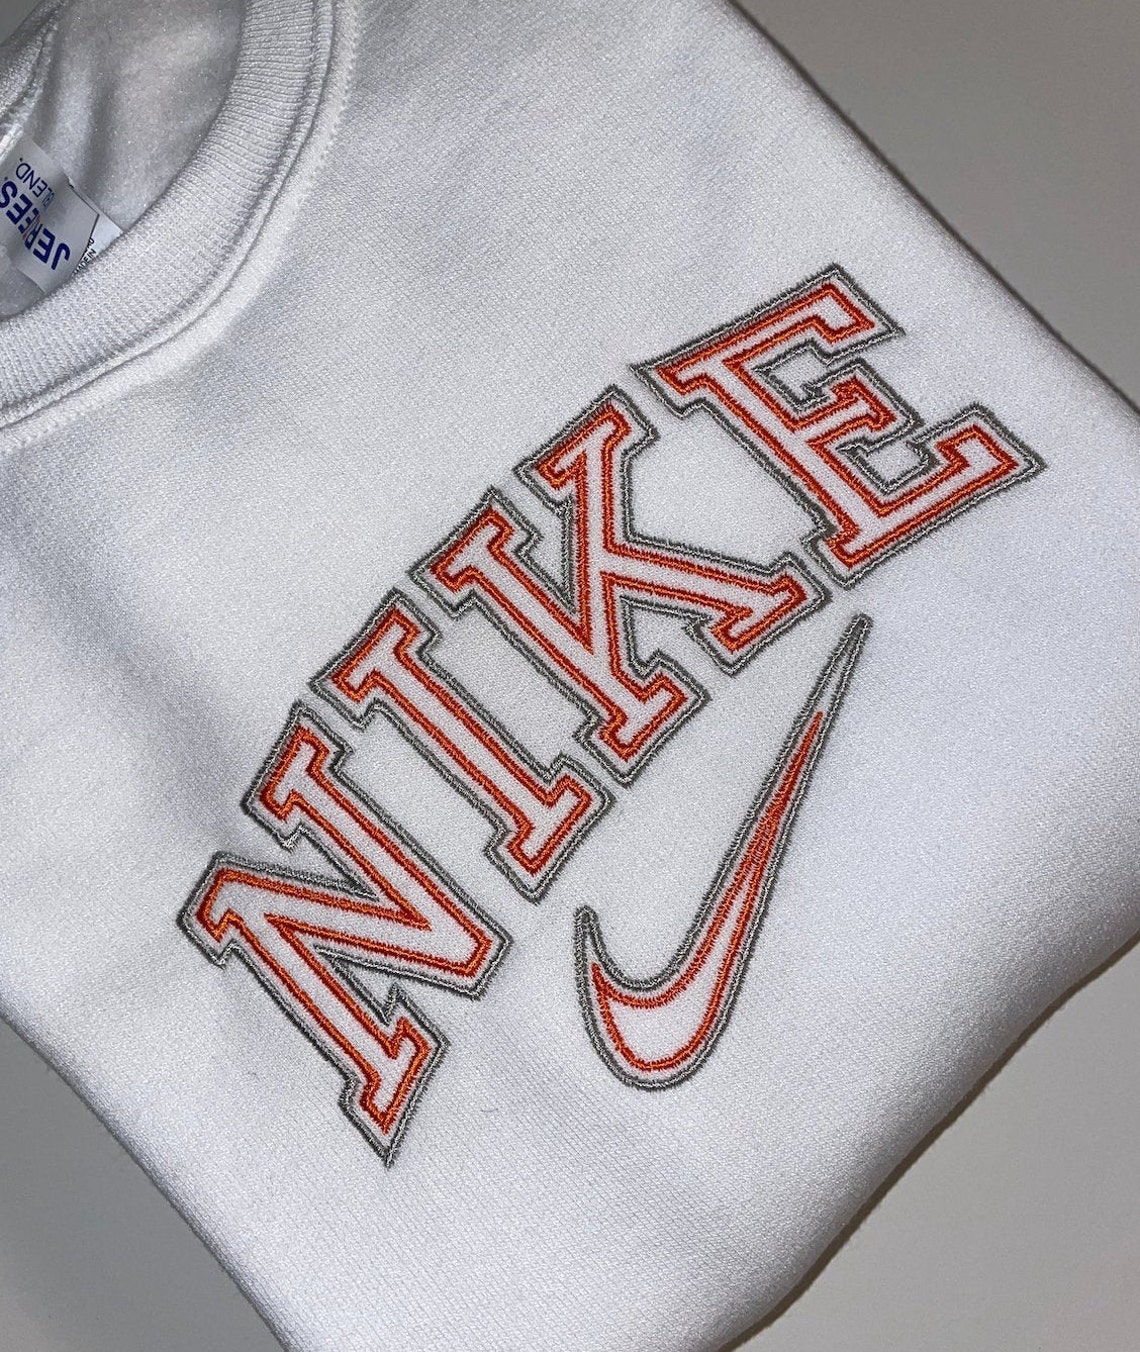 Nike Embroidered Crewneck Sweatshirt Custom | Etsy